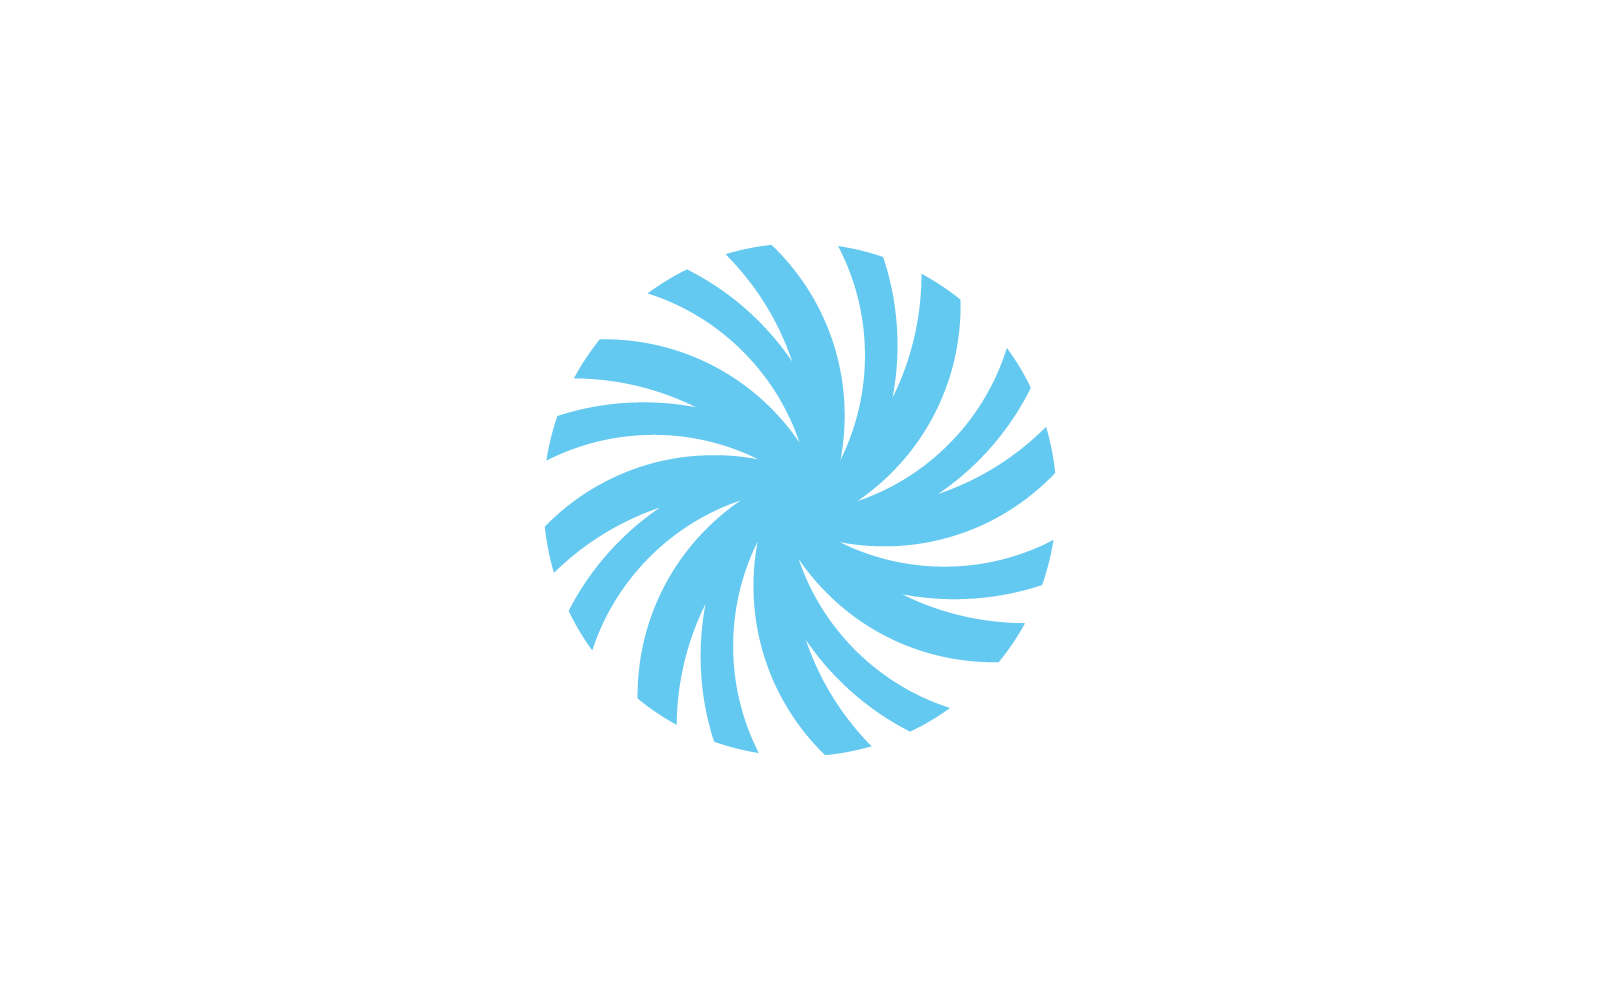 Business logo, vortex, wave and spiral flat design